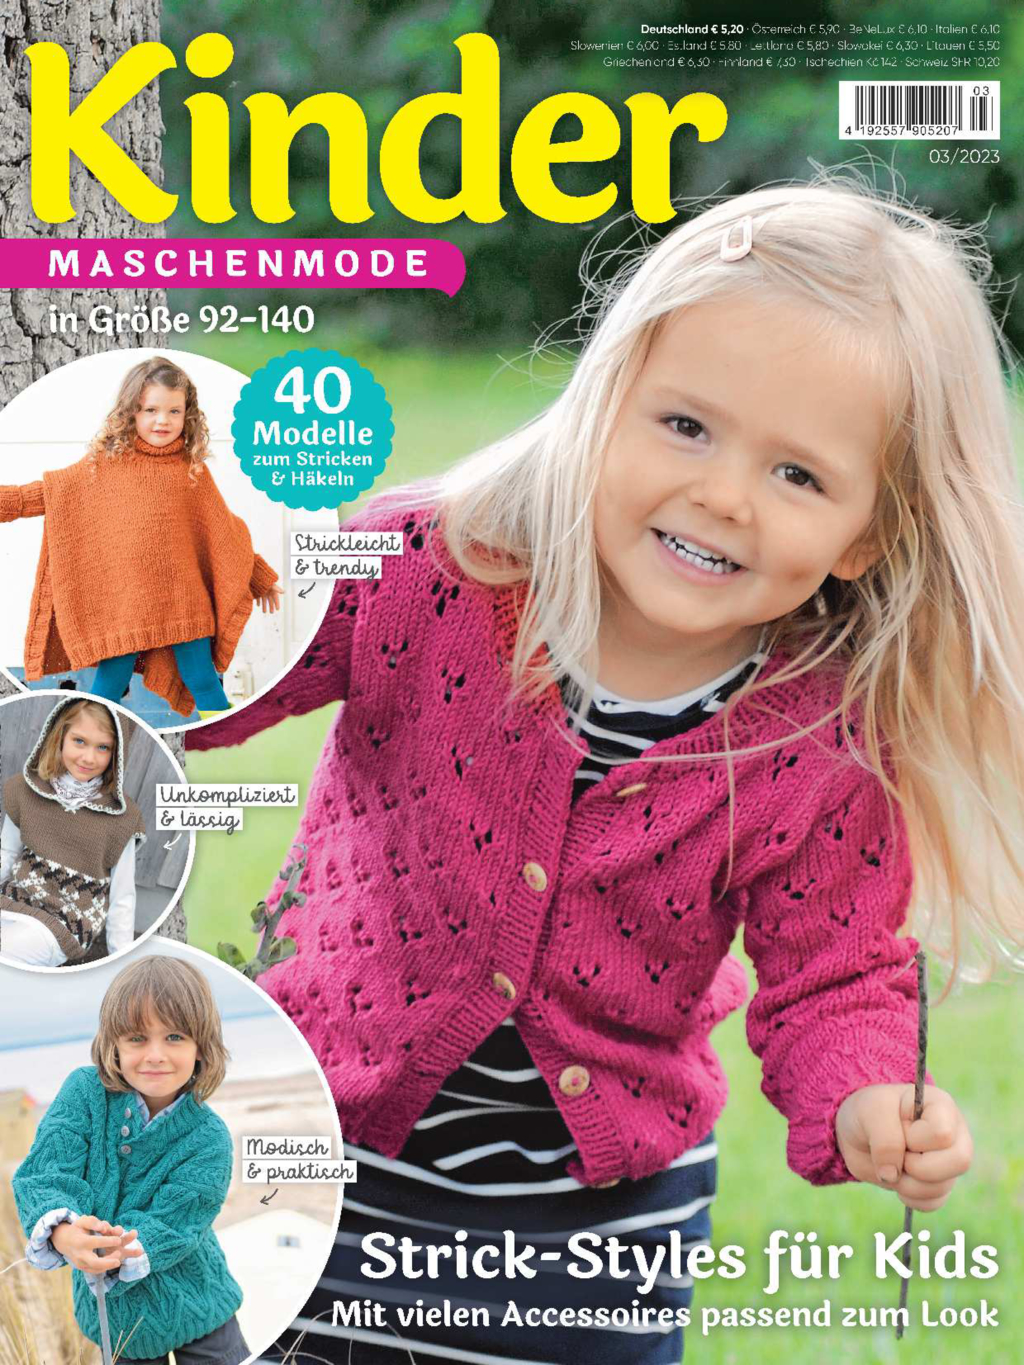 Kinder Maschenmode 3/2023 - Strick-Styles für Kids